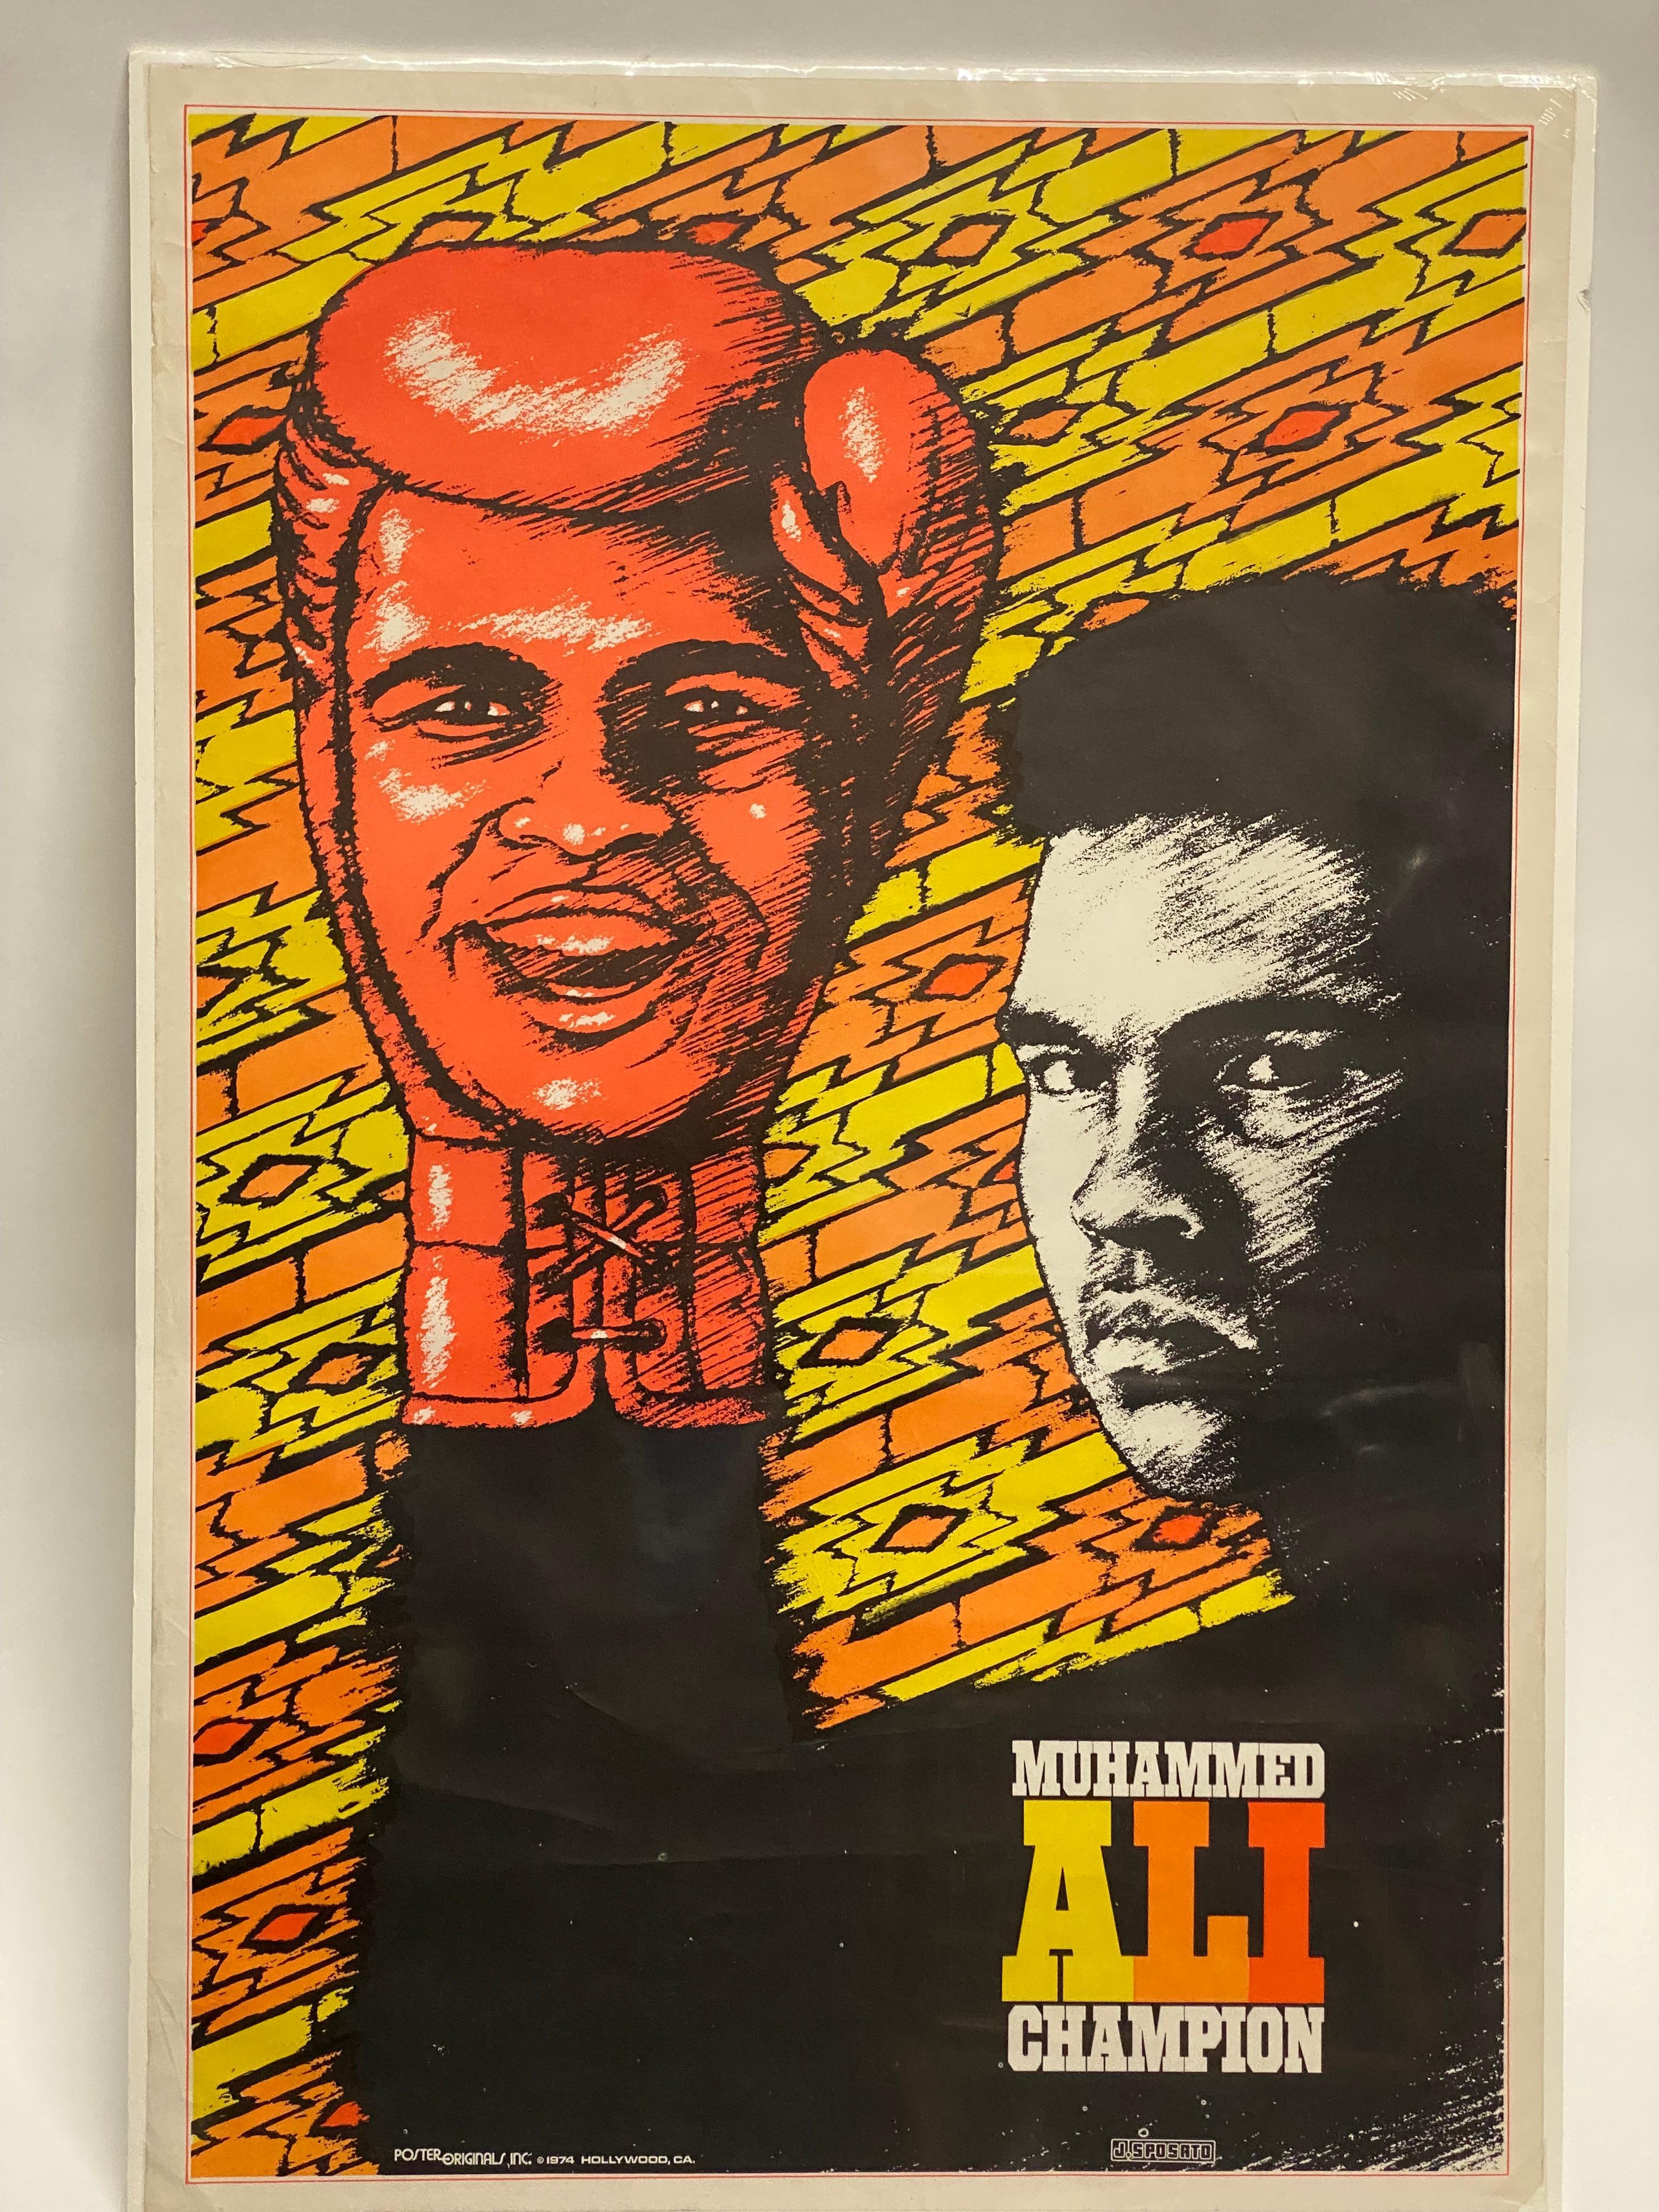 Affiche lithographique en lumière noire de Muhammed Ali, circa 1974. Publié par Poster Originals, Hollywood, Californie, 1974, J. Sposato. Produit un an avant Thrilla in Manila d'Ali et Joe Frazier. En 1974, Ali avait 32 ans et était proche de son